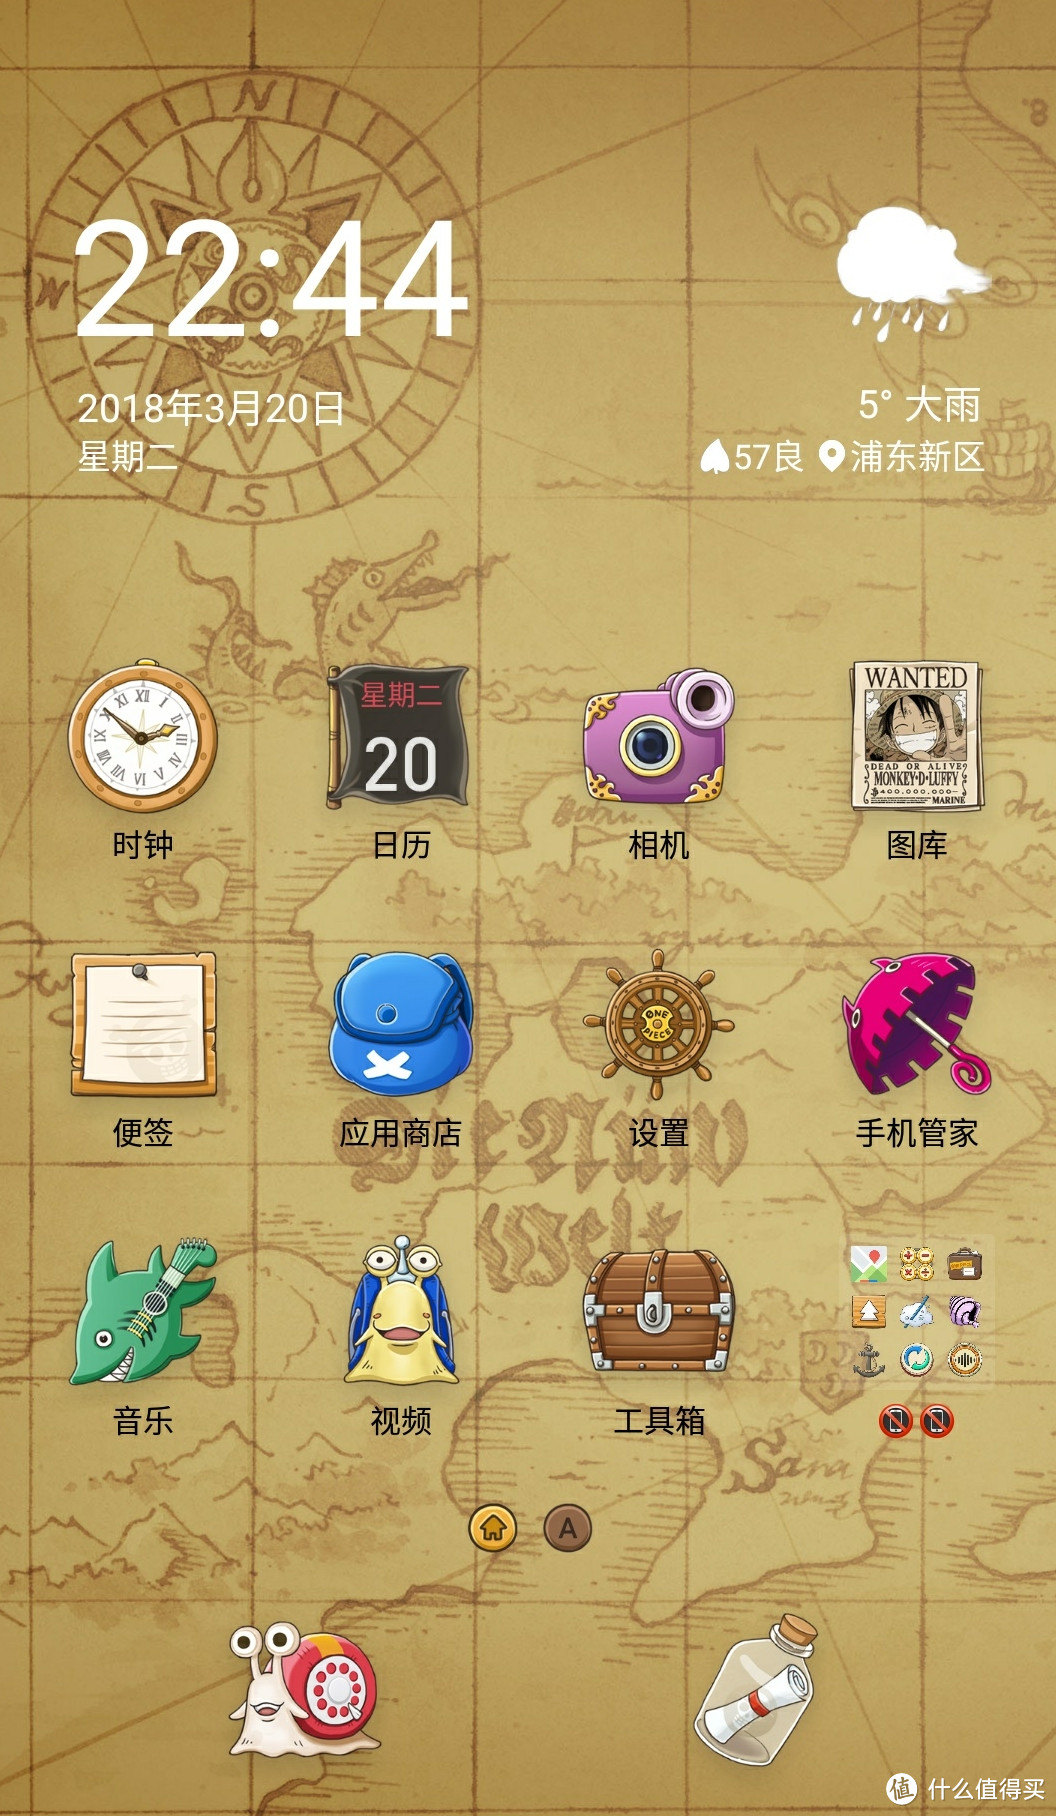 #剁主计划-上海#春晚的惊喜：Meizu 魅族 魅蓝Note6 海贼王版 智能手机对比评测